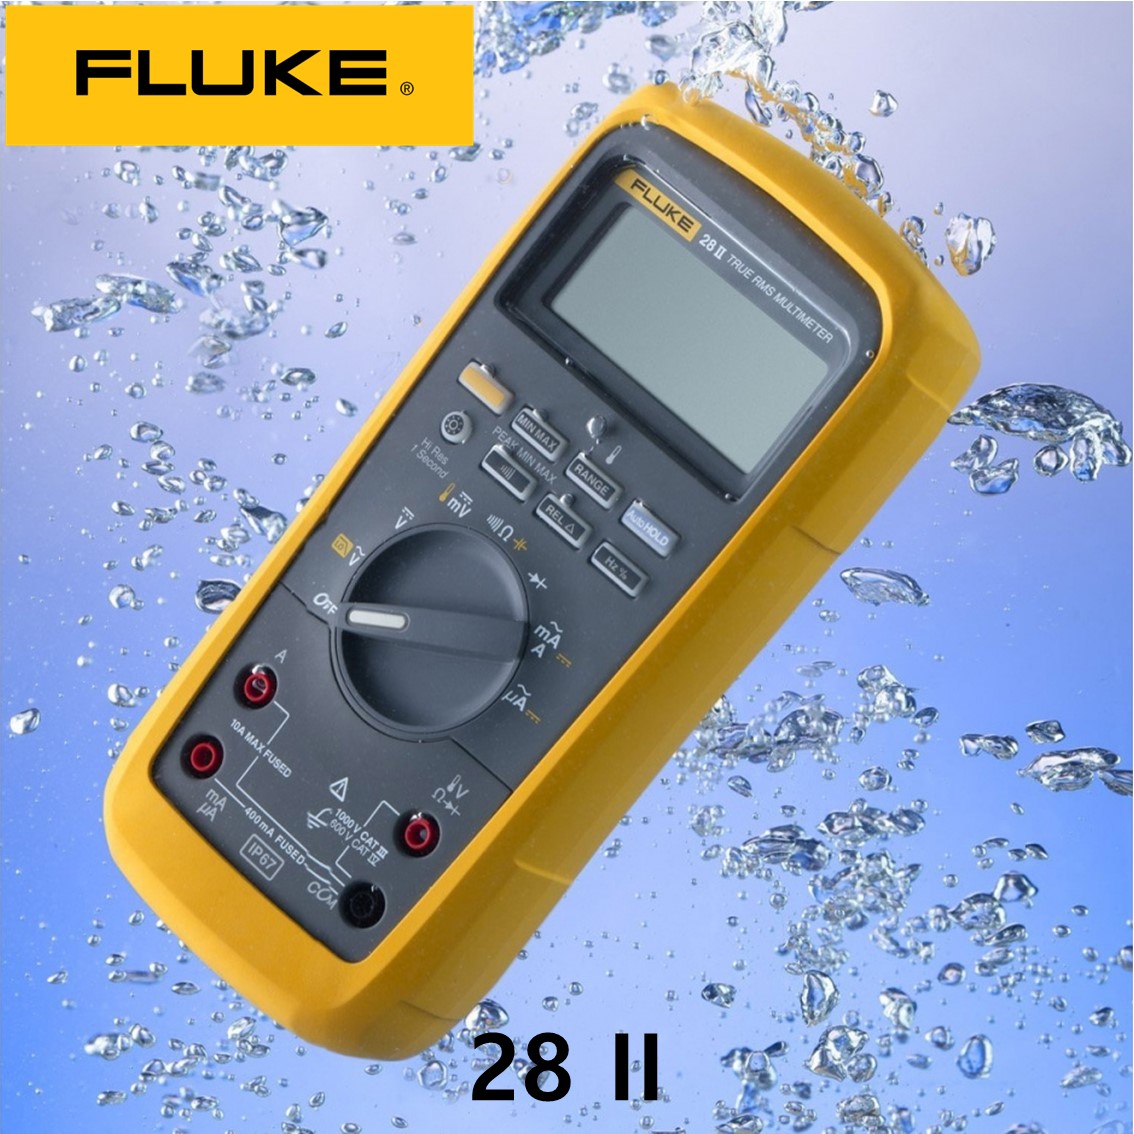 [ FLUKE 28II ] 정품 플루크 방수방진 디지털멀티미터,플루크28 ii, 플루크 282